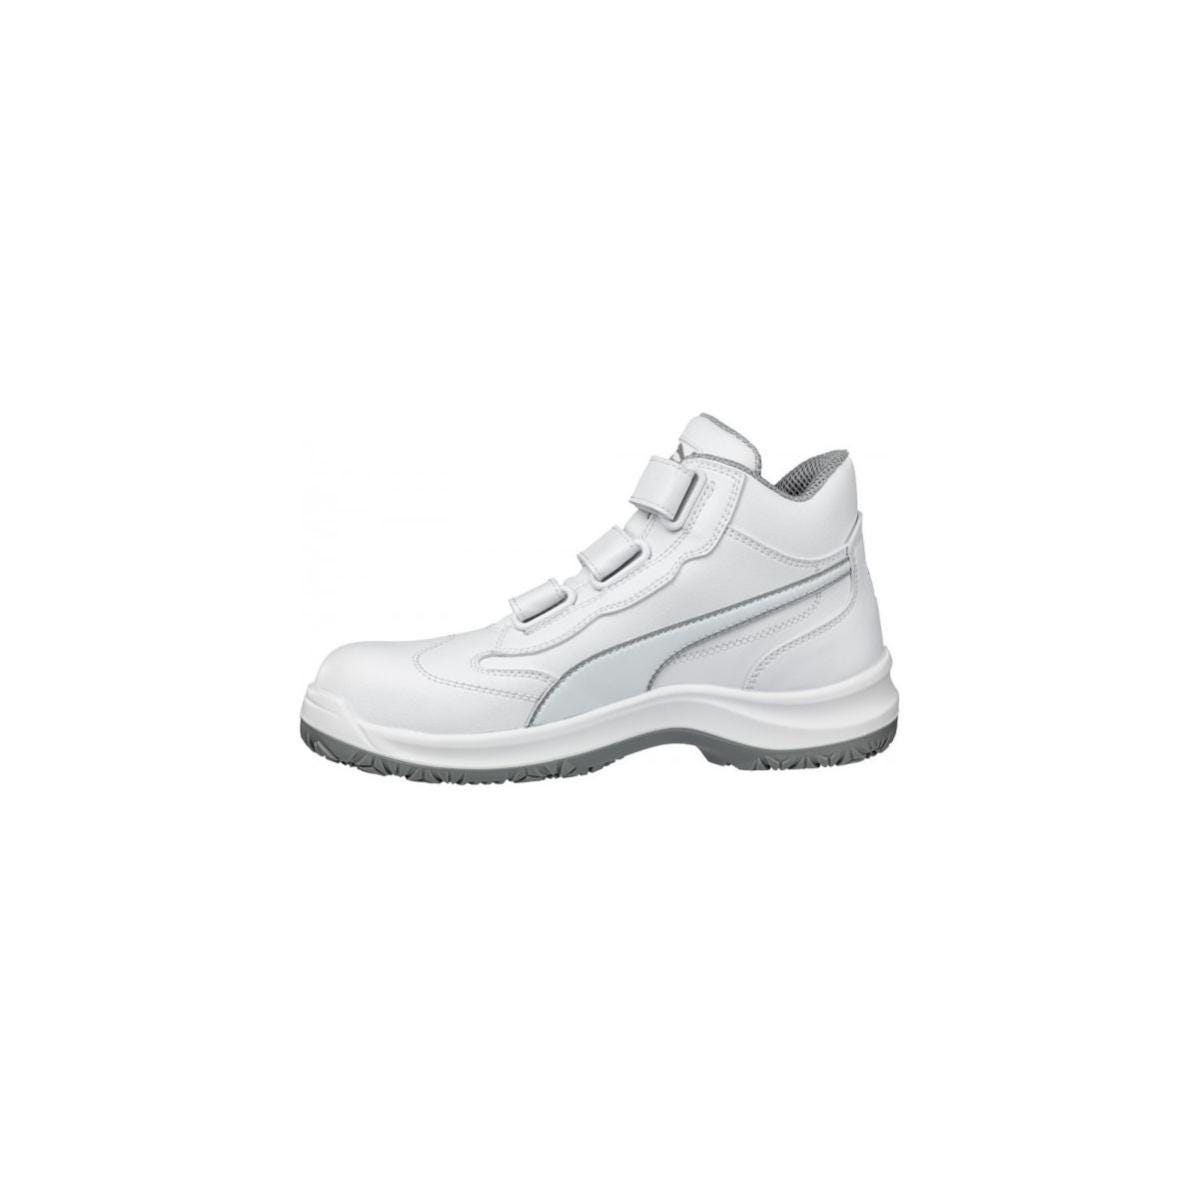 Chaussures de sécurité Absolute Mid S2 Blanc - Puma - Taille 37 4